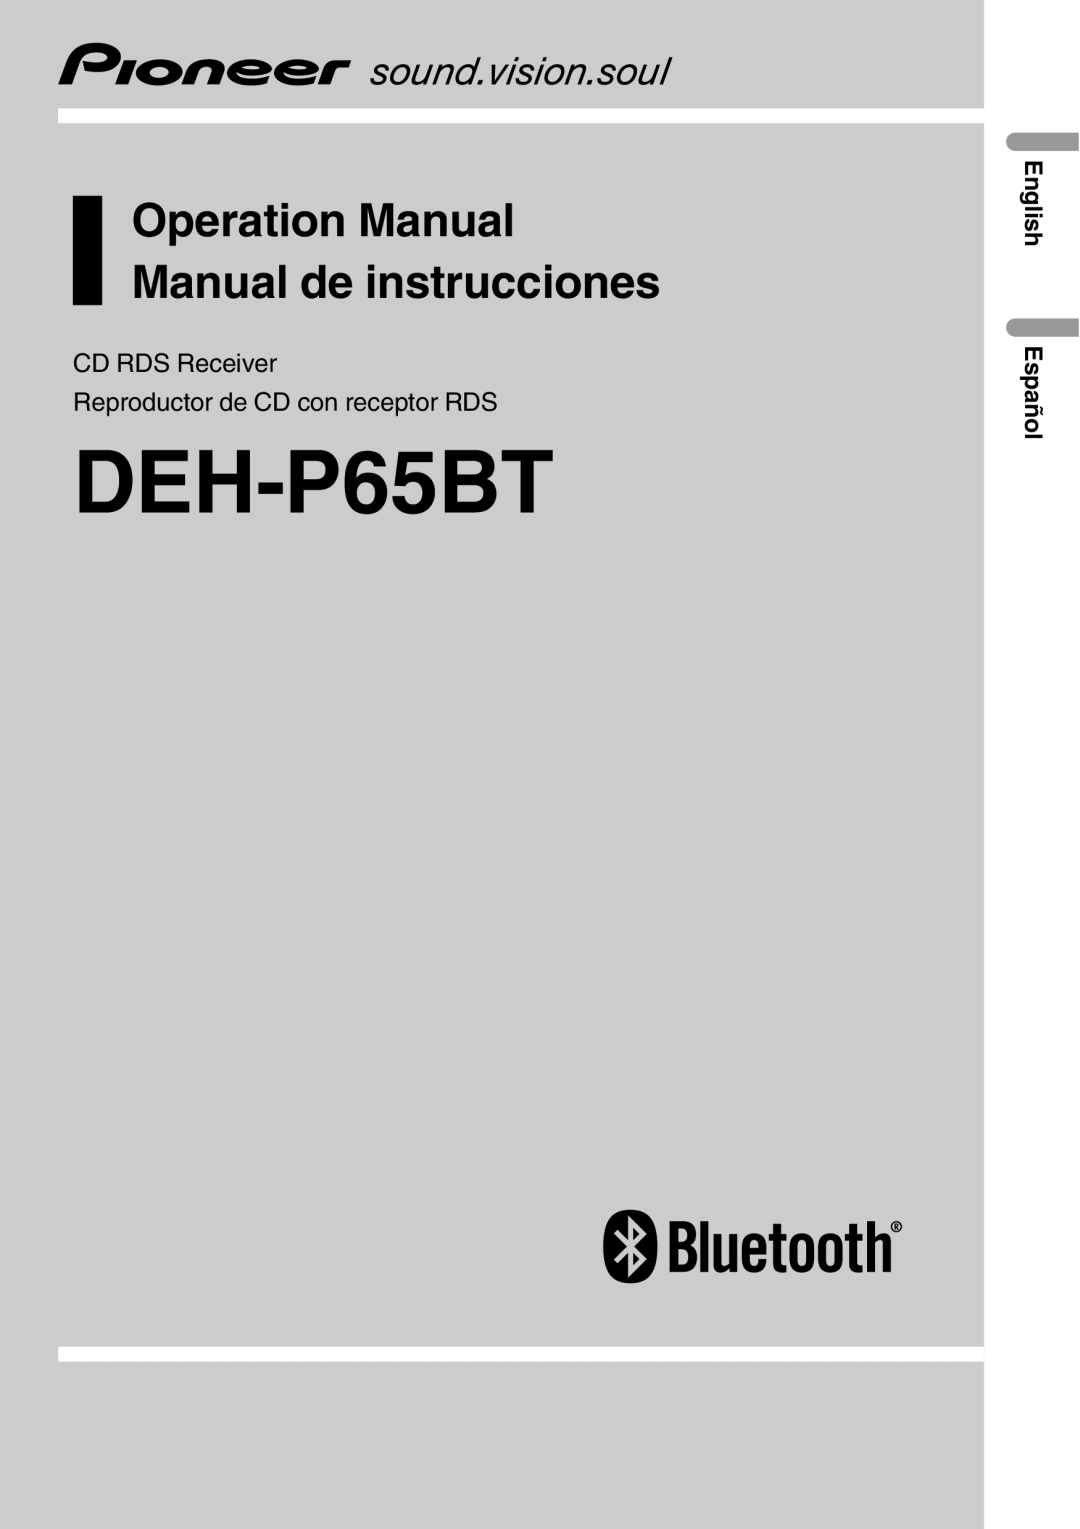 Pioneer DEH-P65BT operation manual CD RDS Receiver, Reproductor de CD con receptor RDS, English Español 